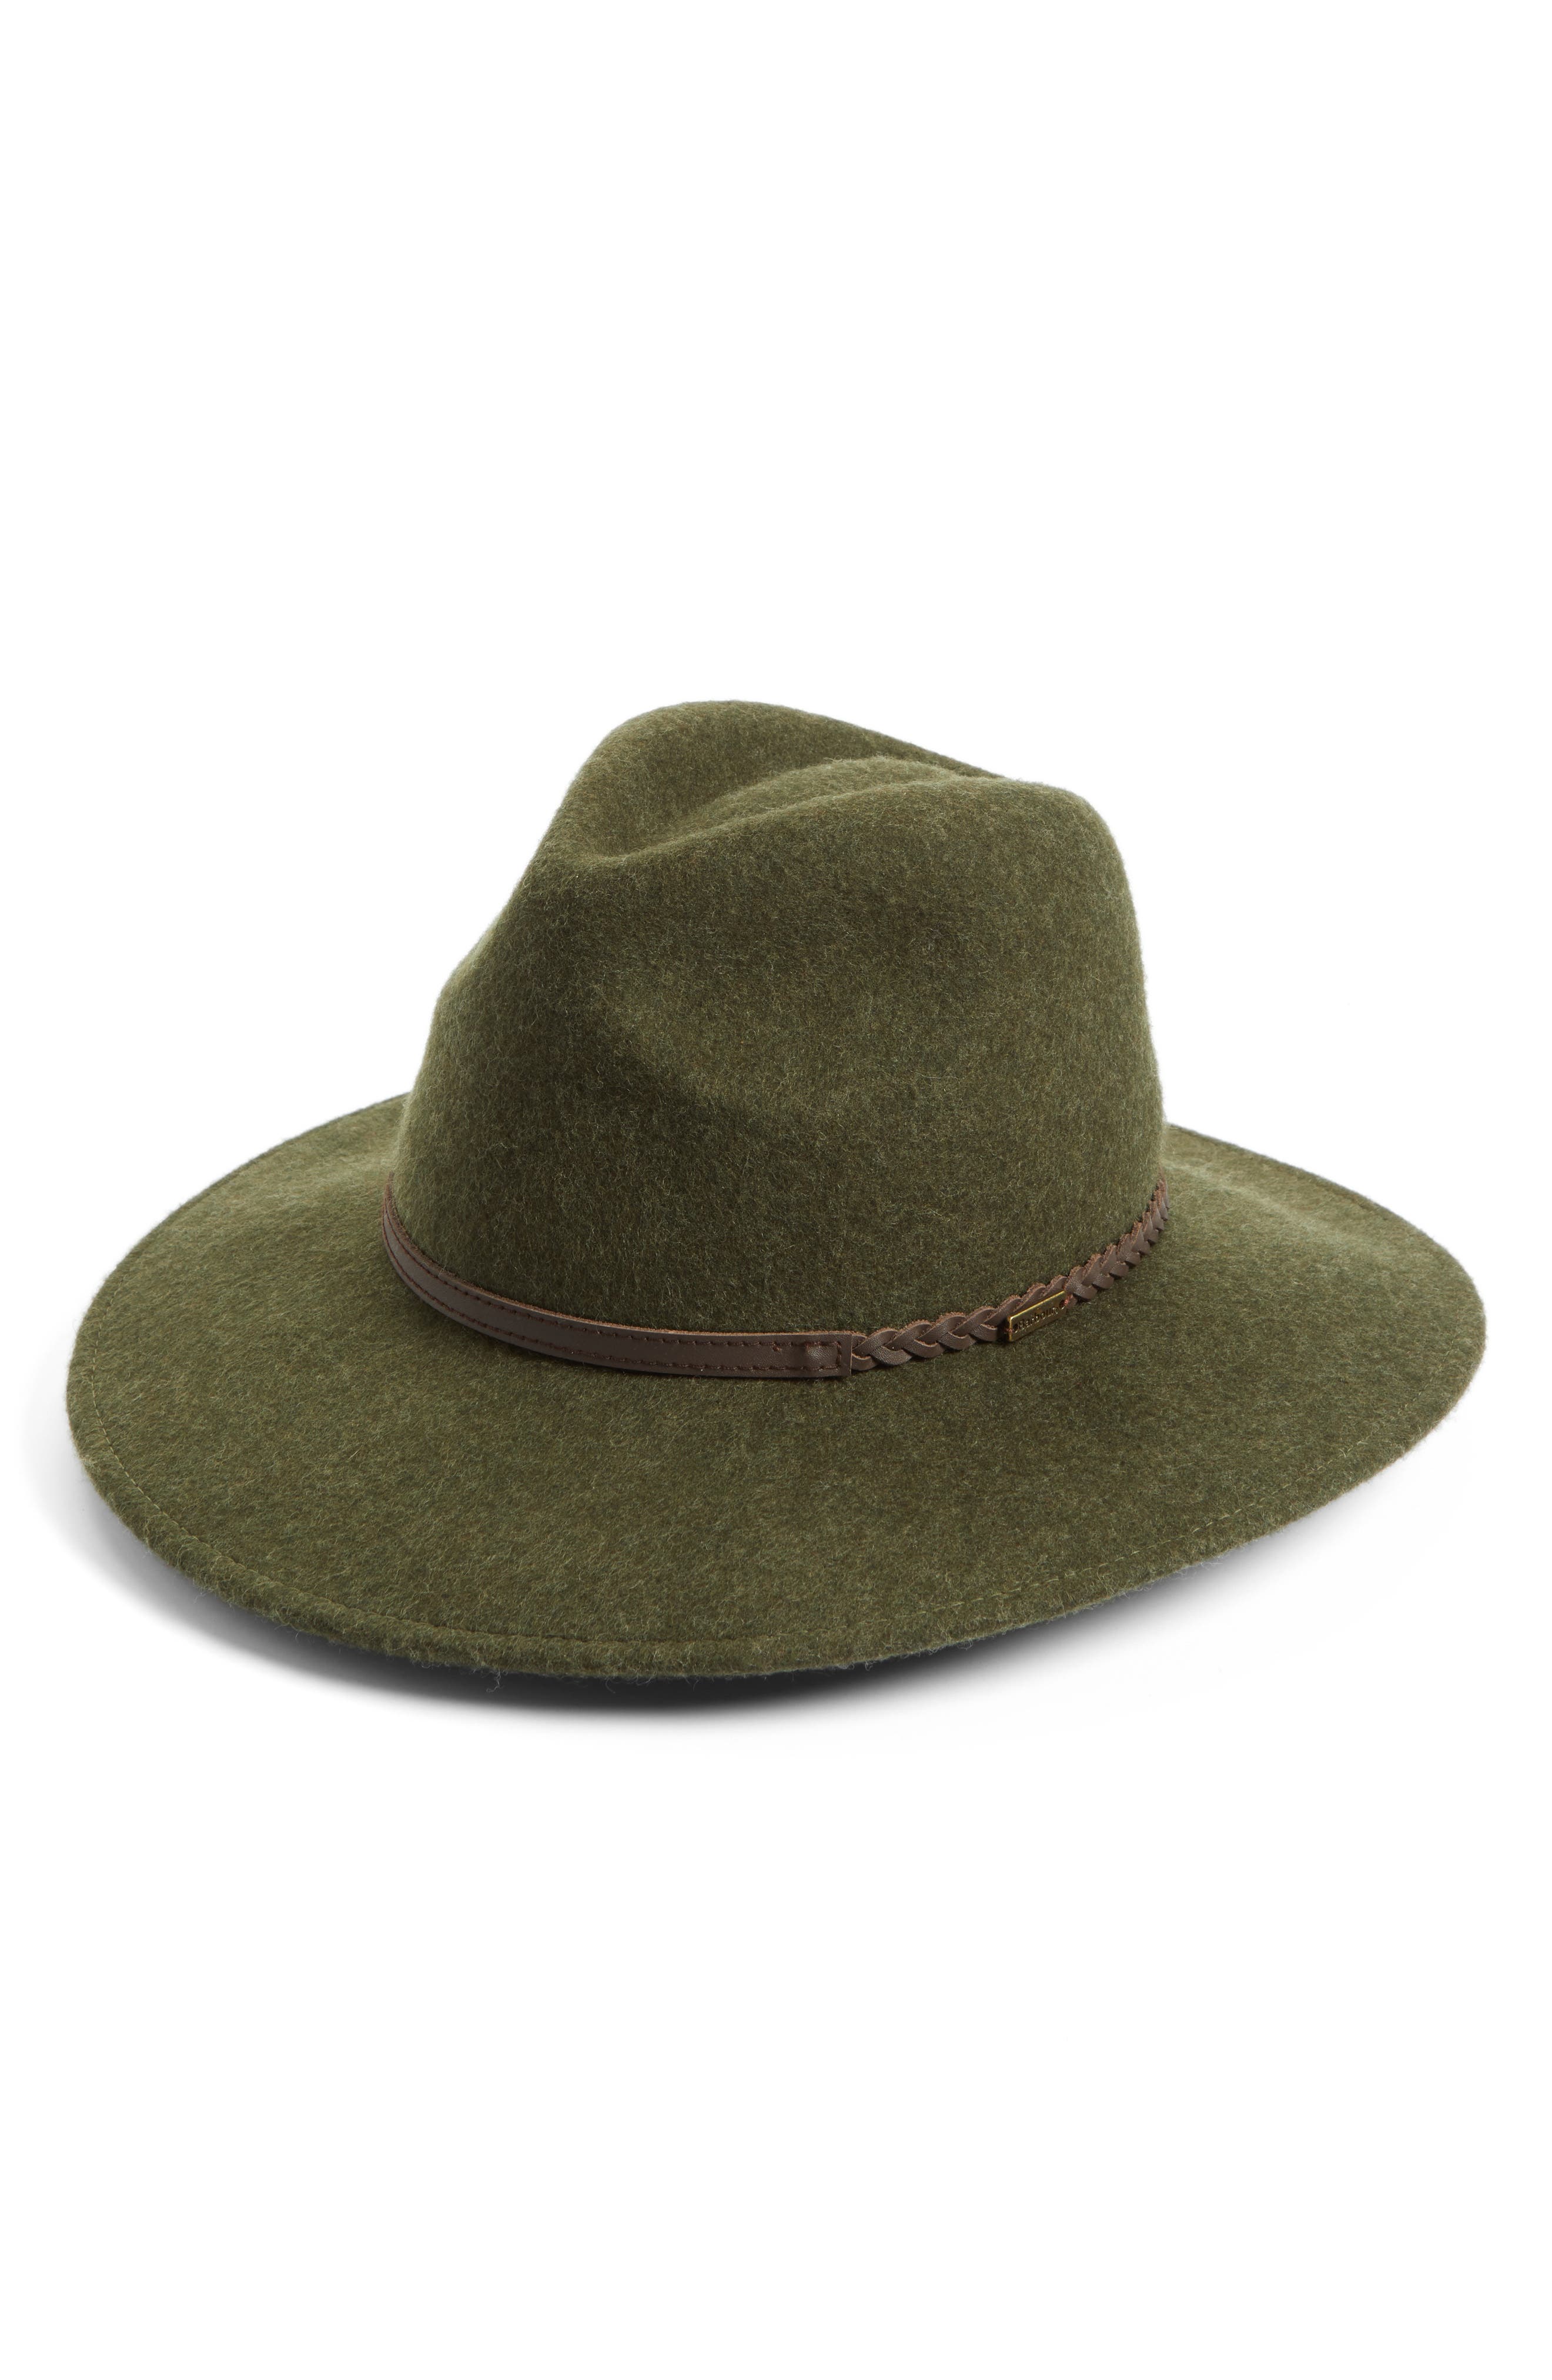 barbour felt hat